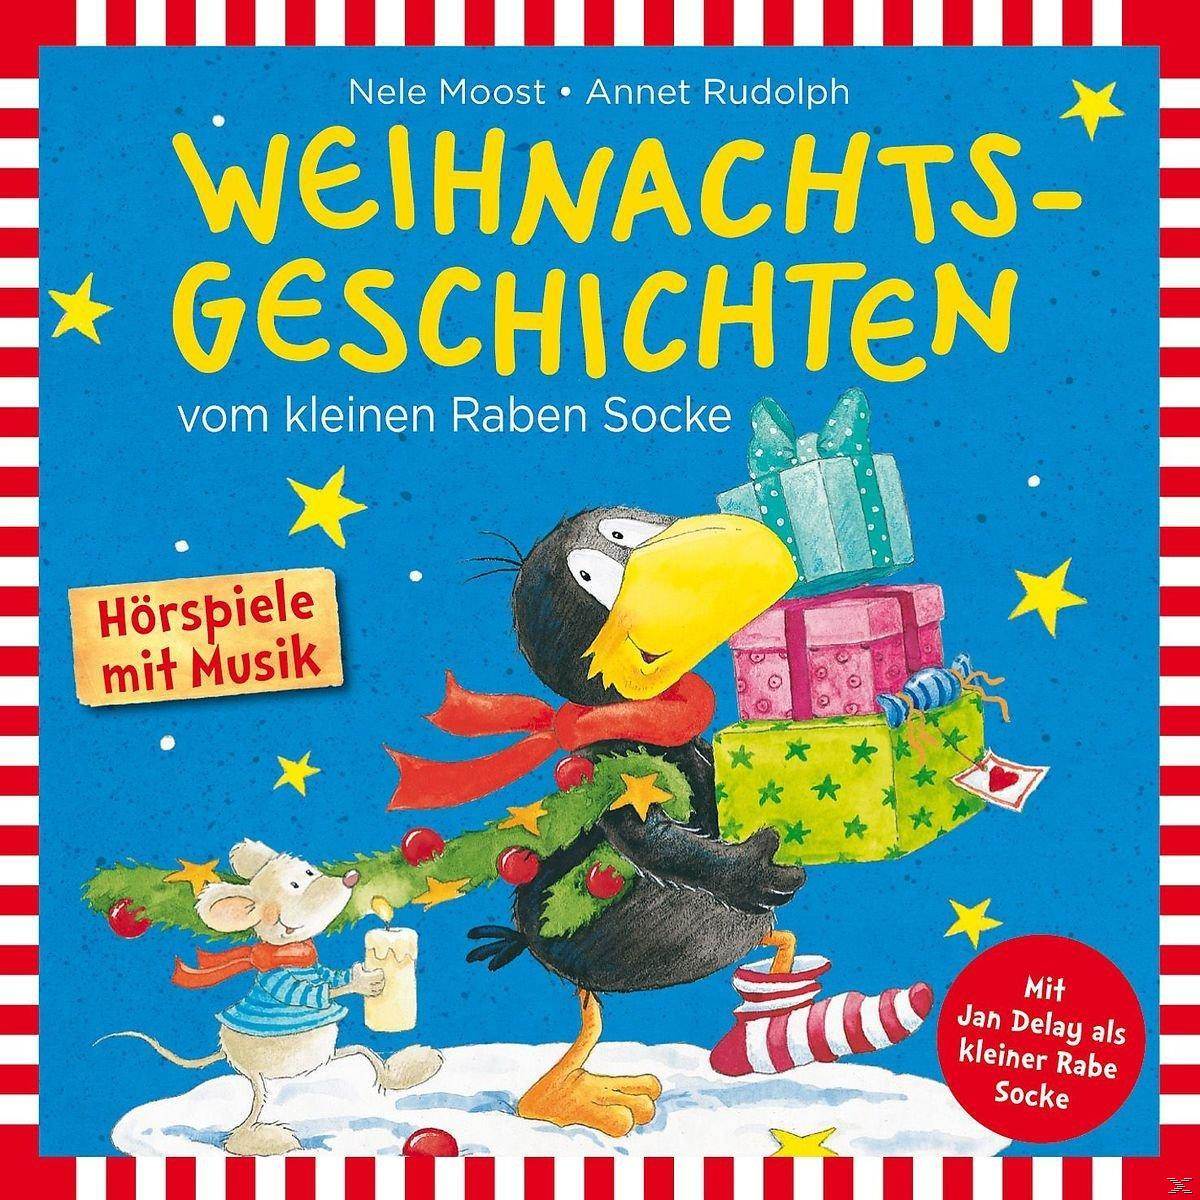 Kleinen Rabe Socke Socke Raben (CD) Weihnachtsgeschichten - Vom -